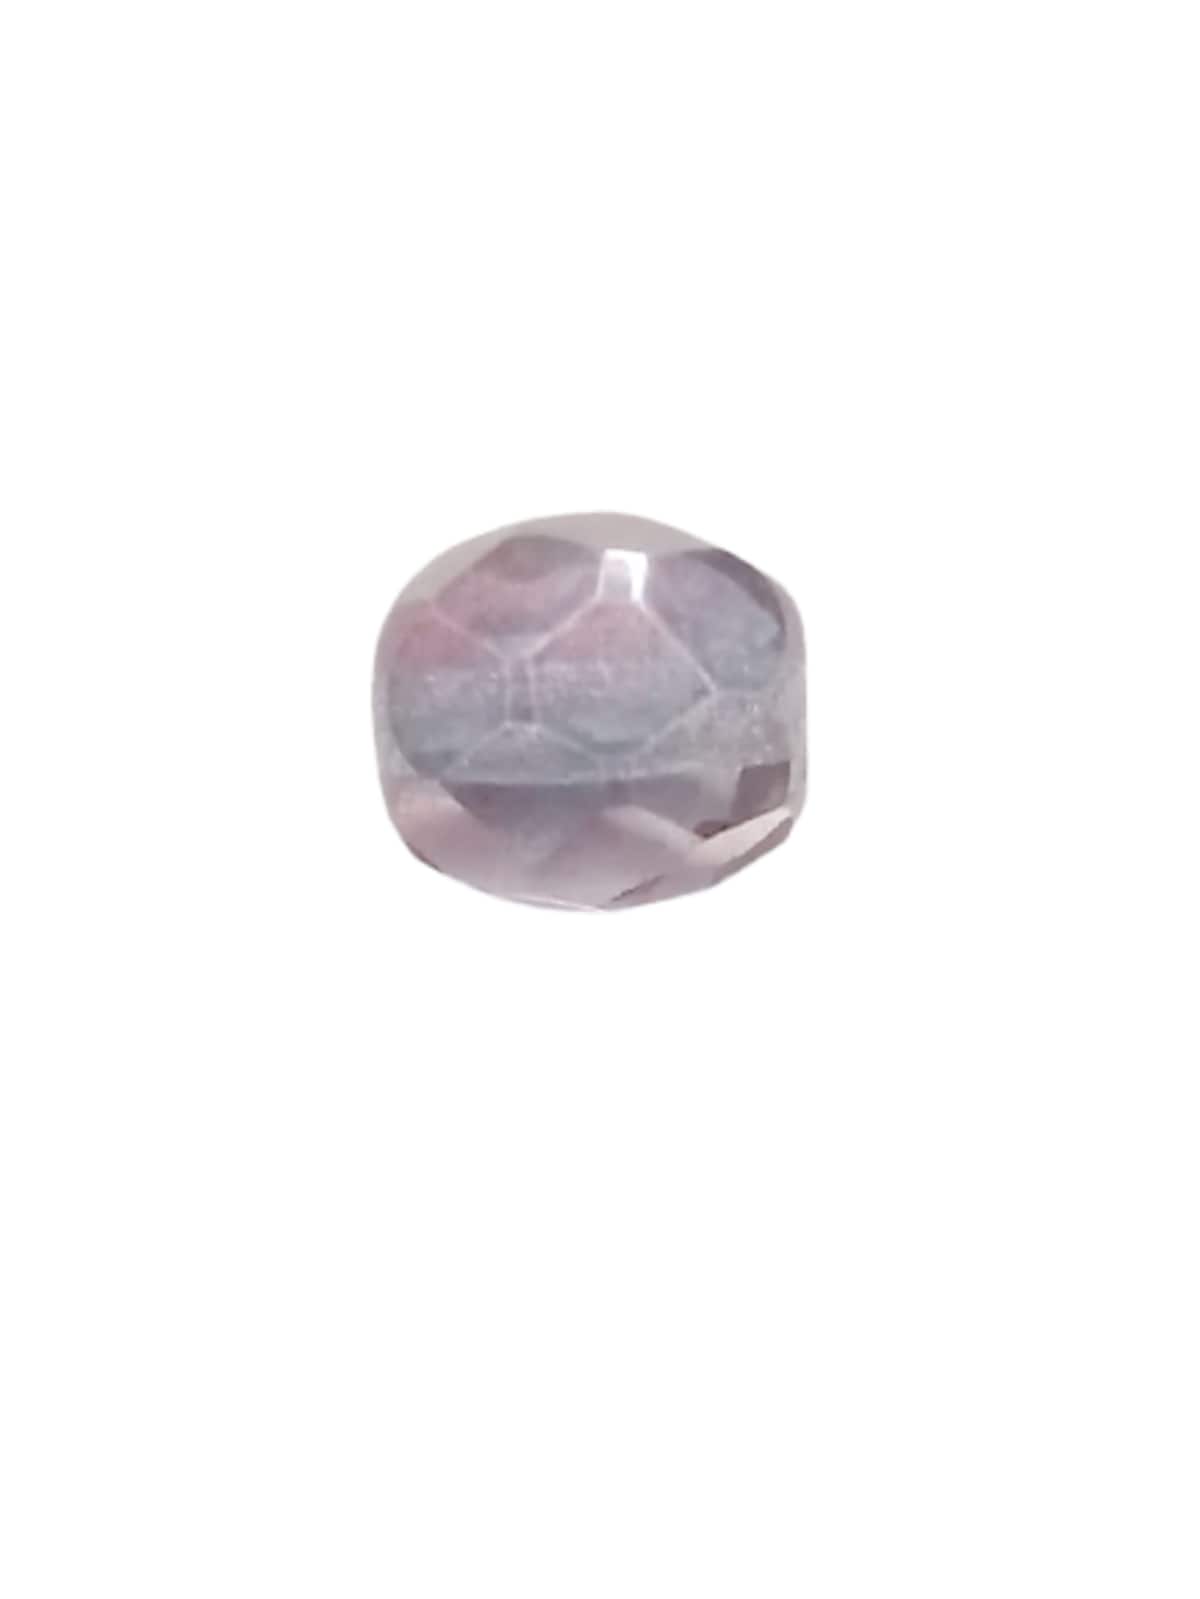 Bola de Cristal Lapidado Cristais Preciosa® Jablonex  8mm - SATIN IRISADA (100 PEÇAS)  - Ju Artes Cristais